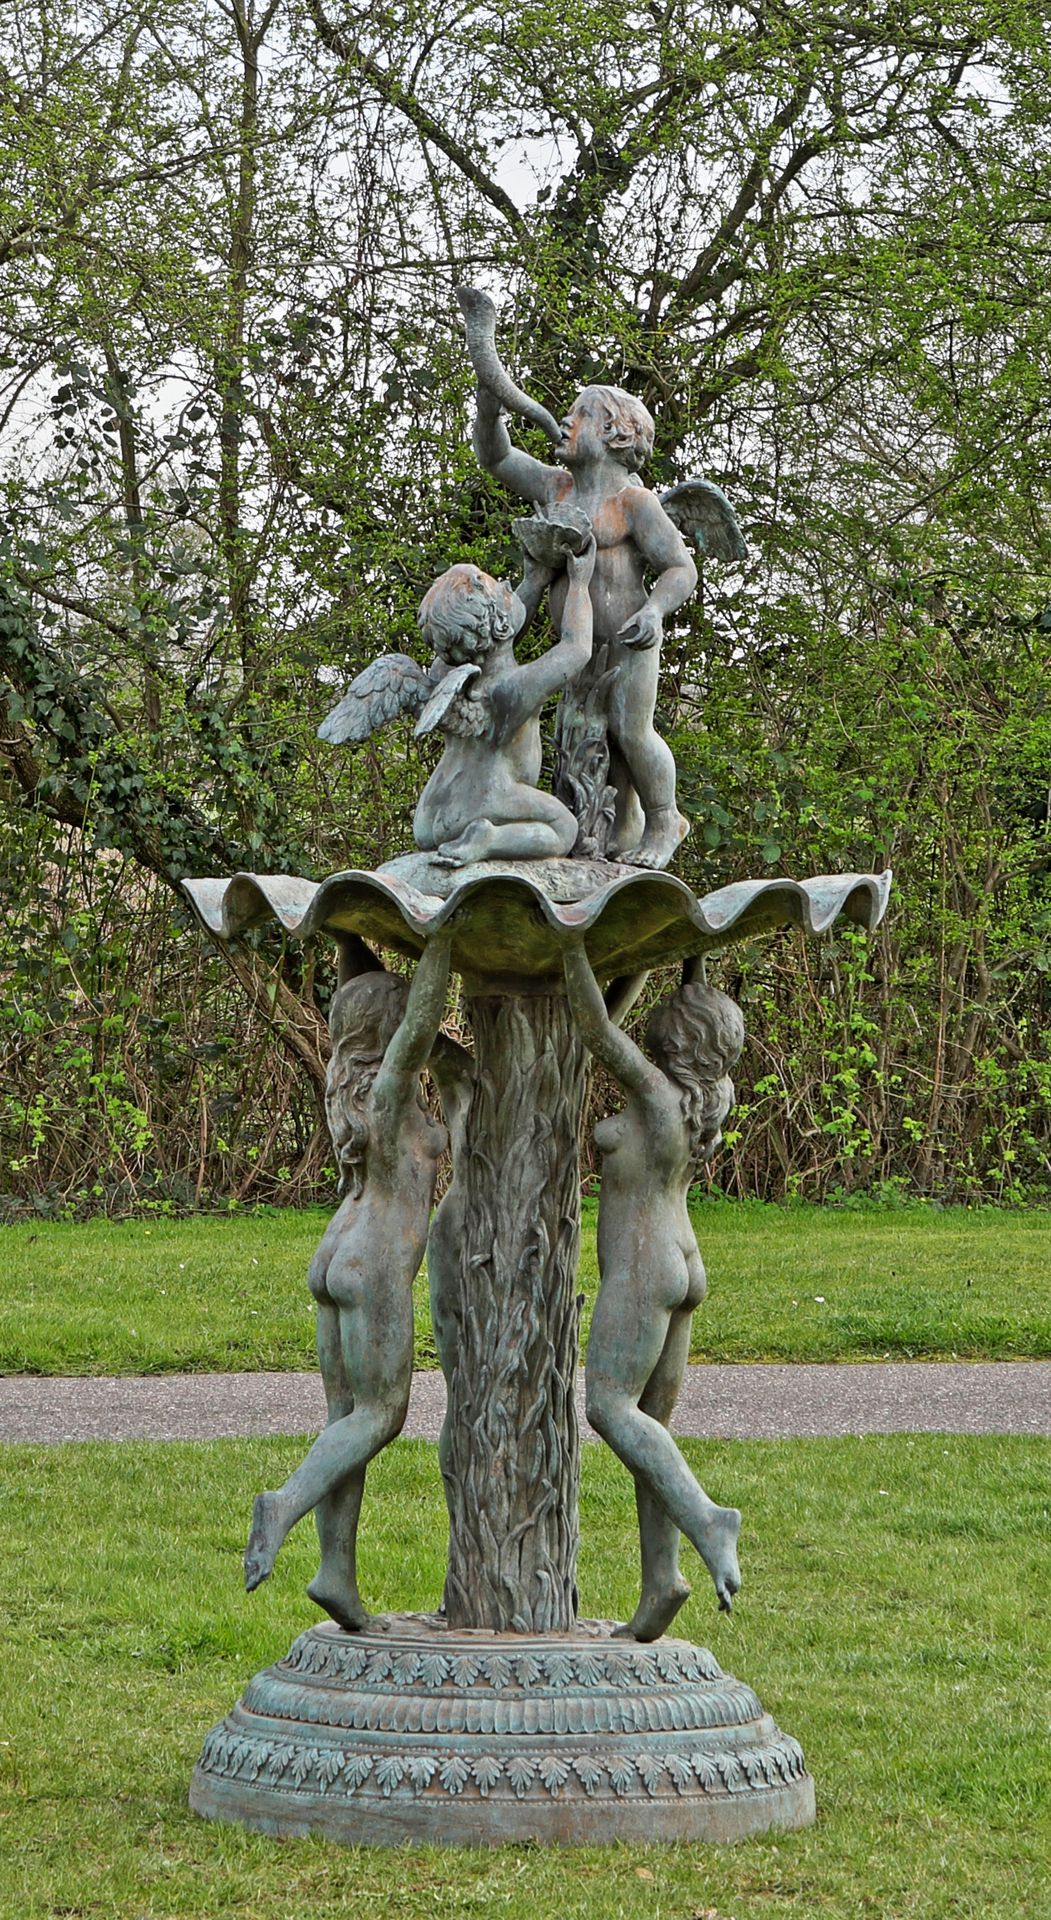 Null 大型青铜雕像公园喷泉。三个雕刻完整的年轻女性裸体像站立在圆形底座上，底座上饰有丰富的装饰性刺桐和舌状中楣。她们各站在一只脚尖上，支撑着贝壳状的大喷泉碗&hellip;